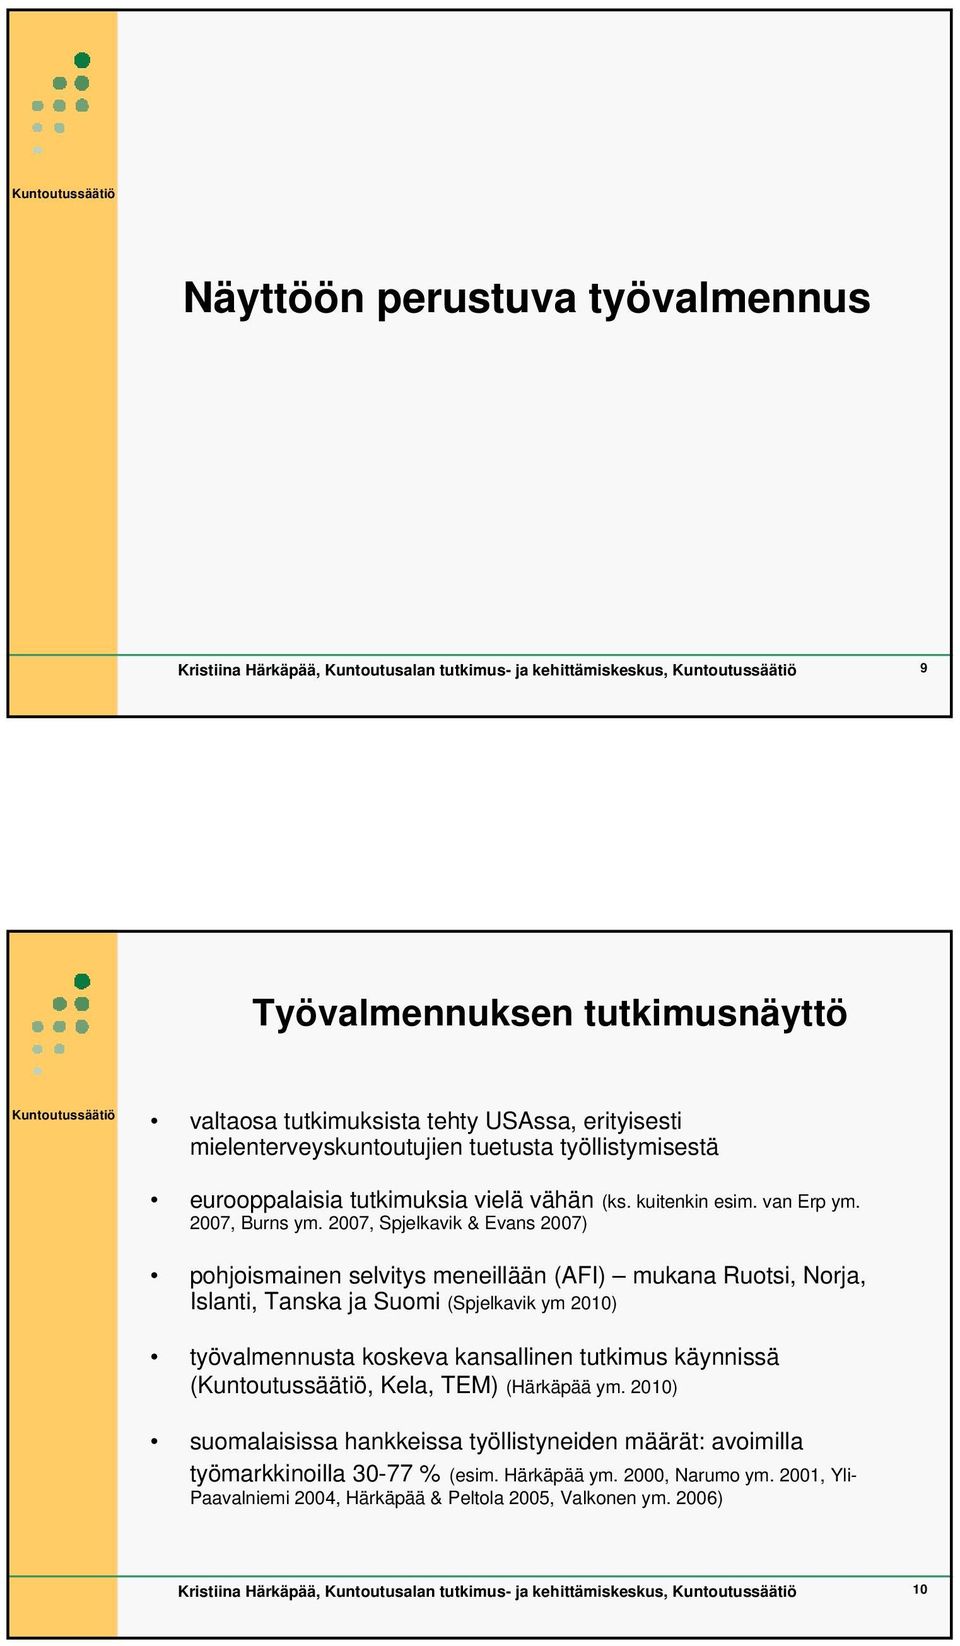 2007, Spjelkavik & Evans 2007) pohjoismainen selvitys meneillään (AFI) mukana Ruotsi, Norja, Islanti, Tanska ja Suomi (Spjelkavik ym 2010) työvalmennusta koskeva kansallinen tutkimus käynnissä (,